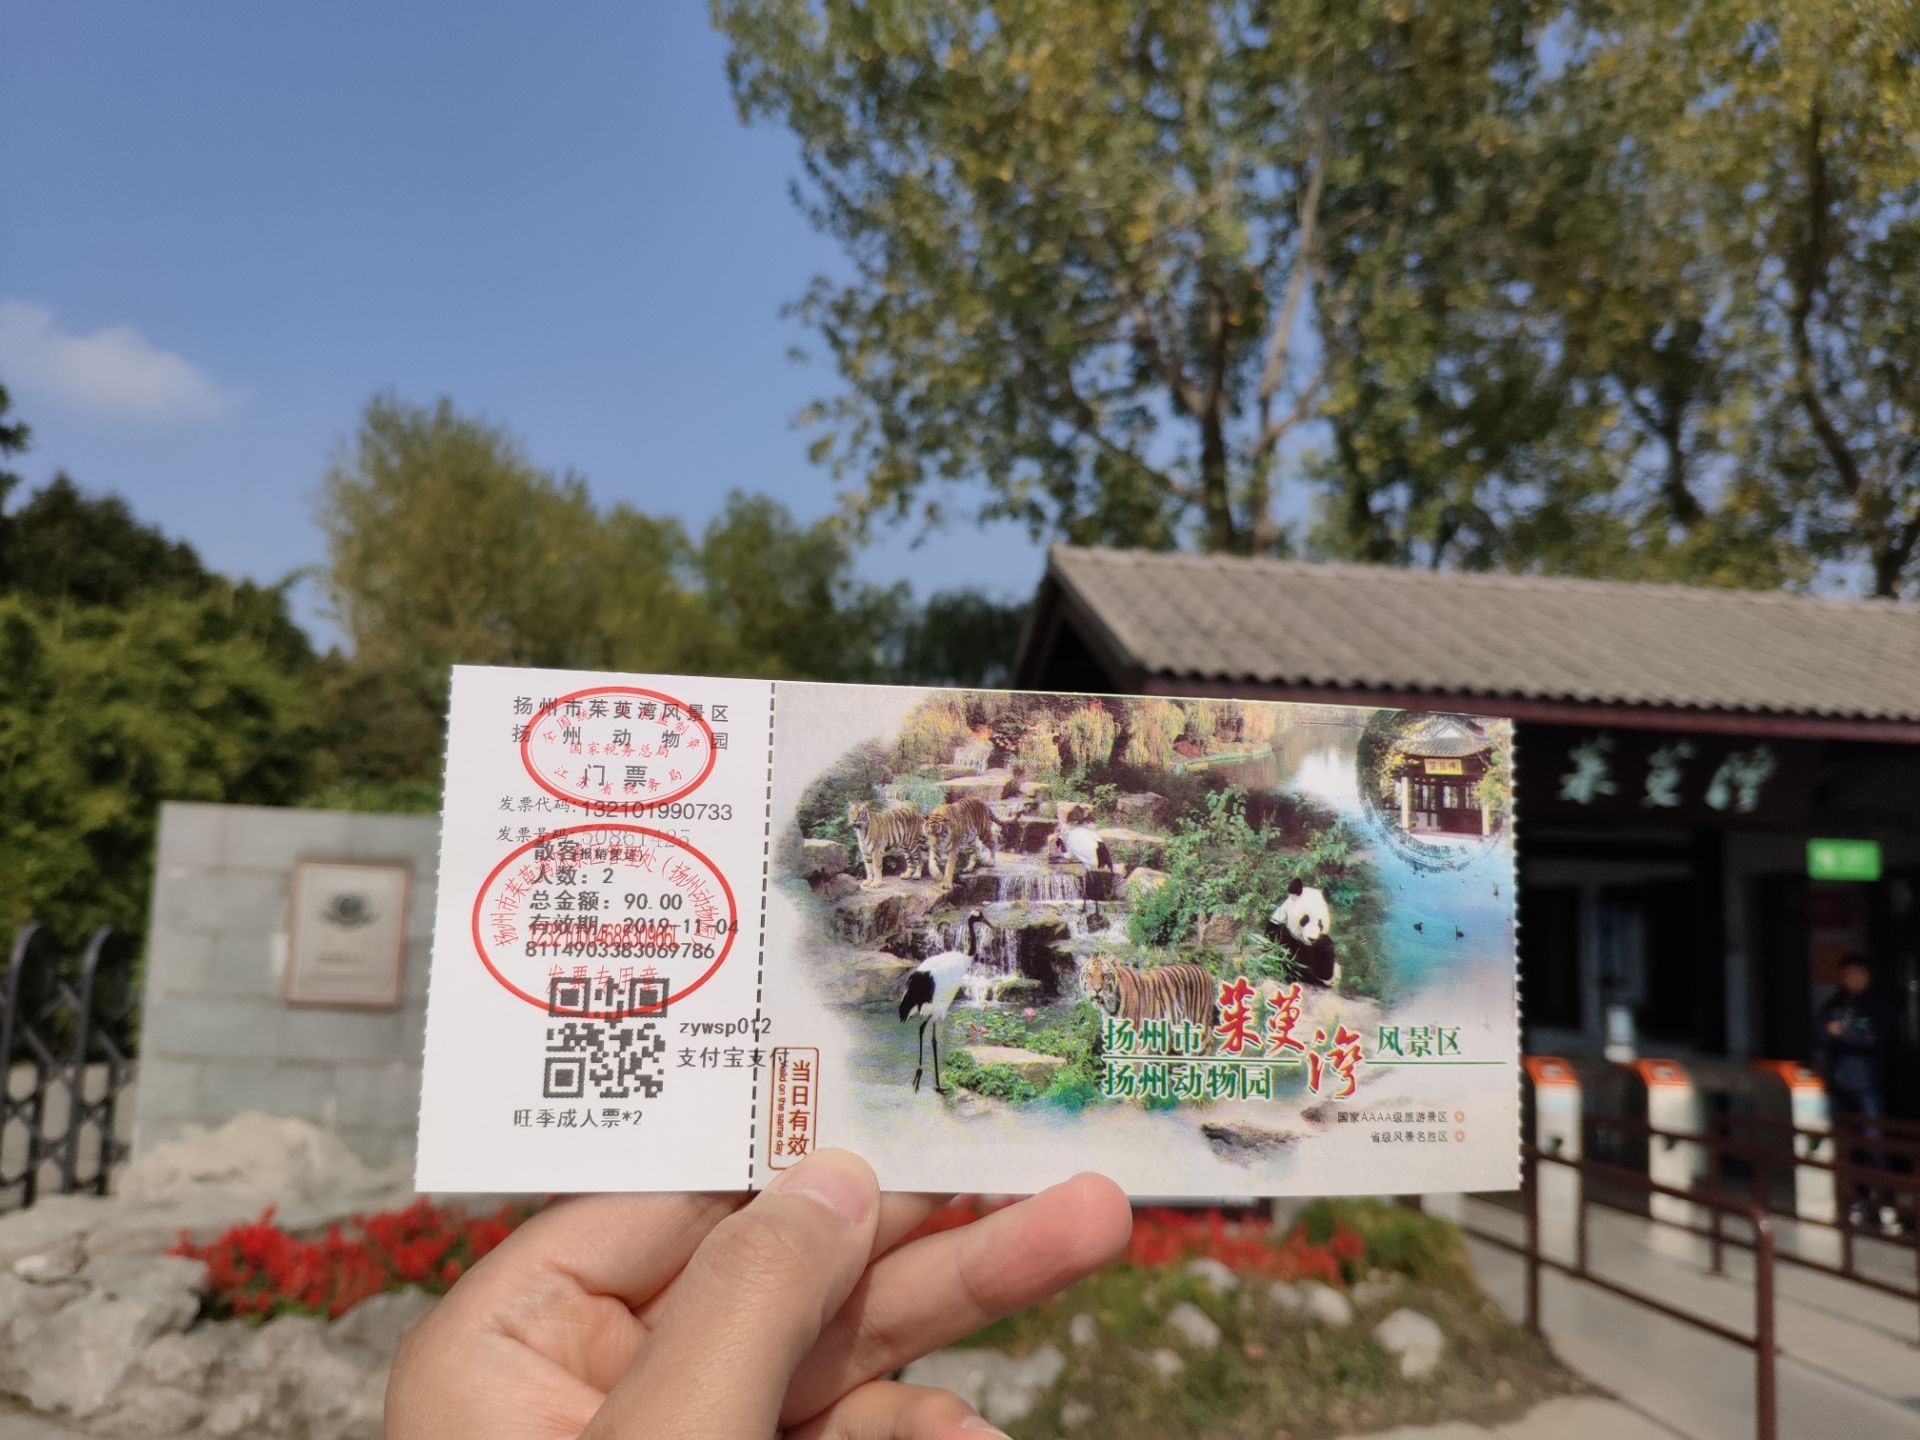 扬州茱萸湾动物园地图图片